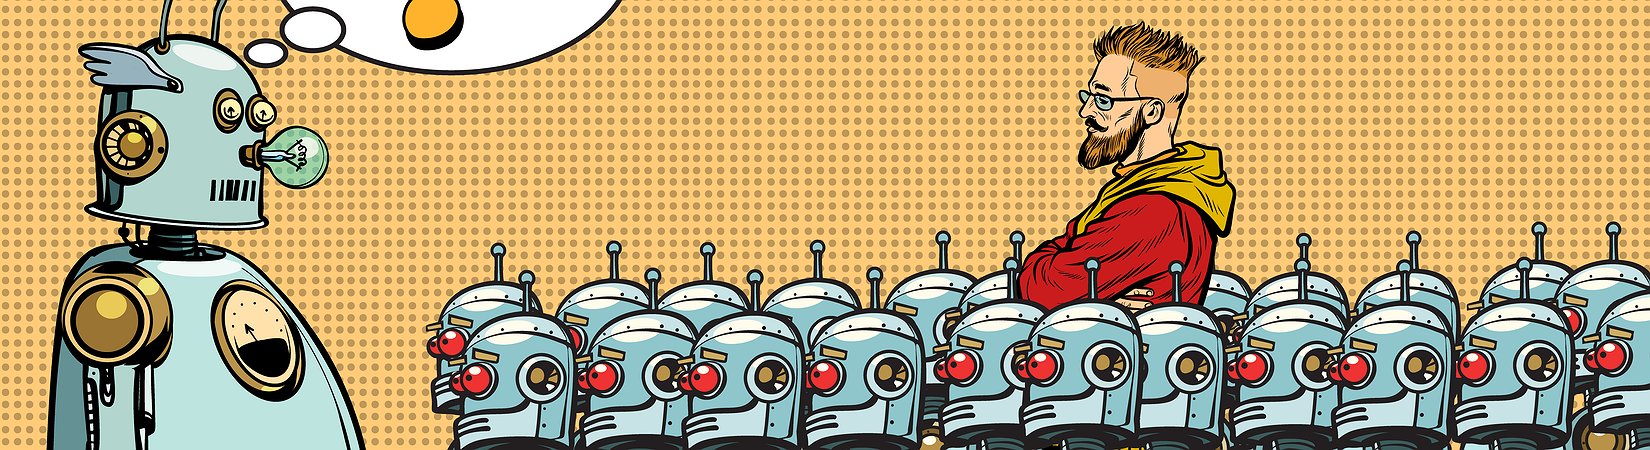 Почему людьми должны управлять роботы